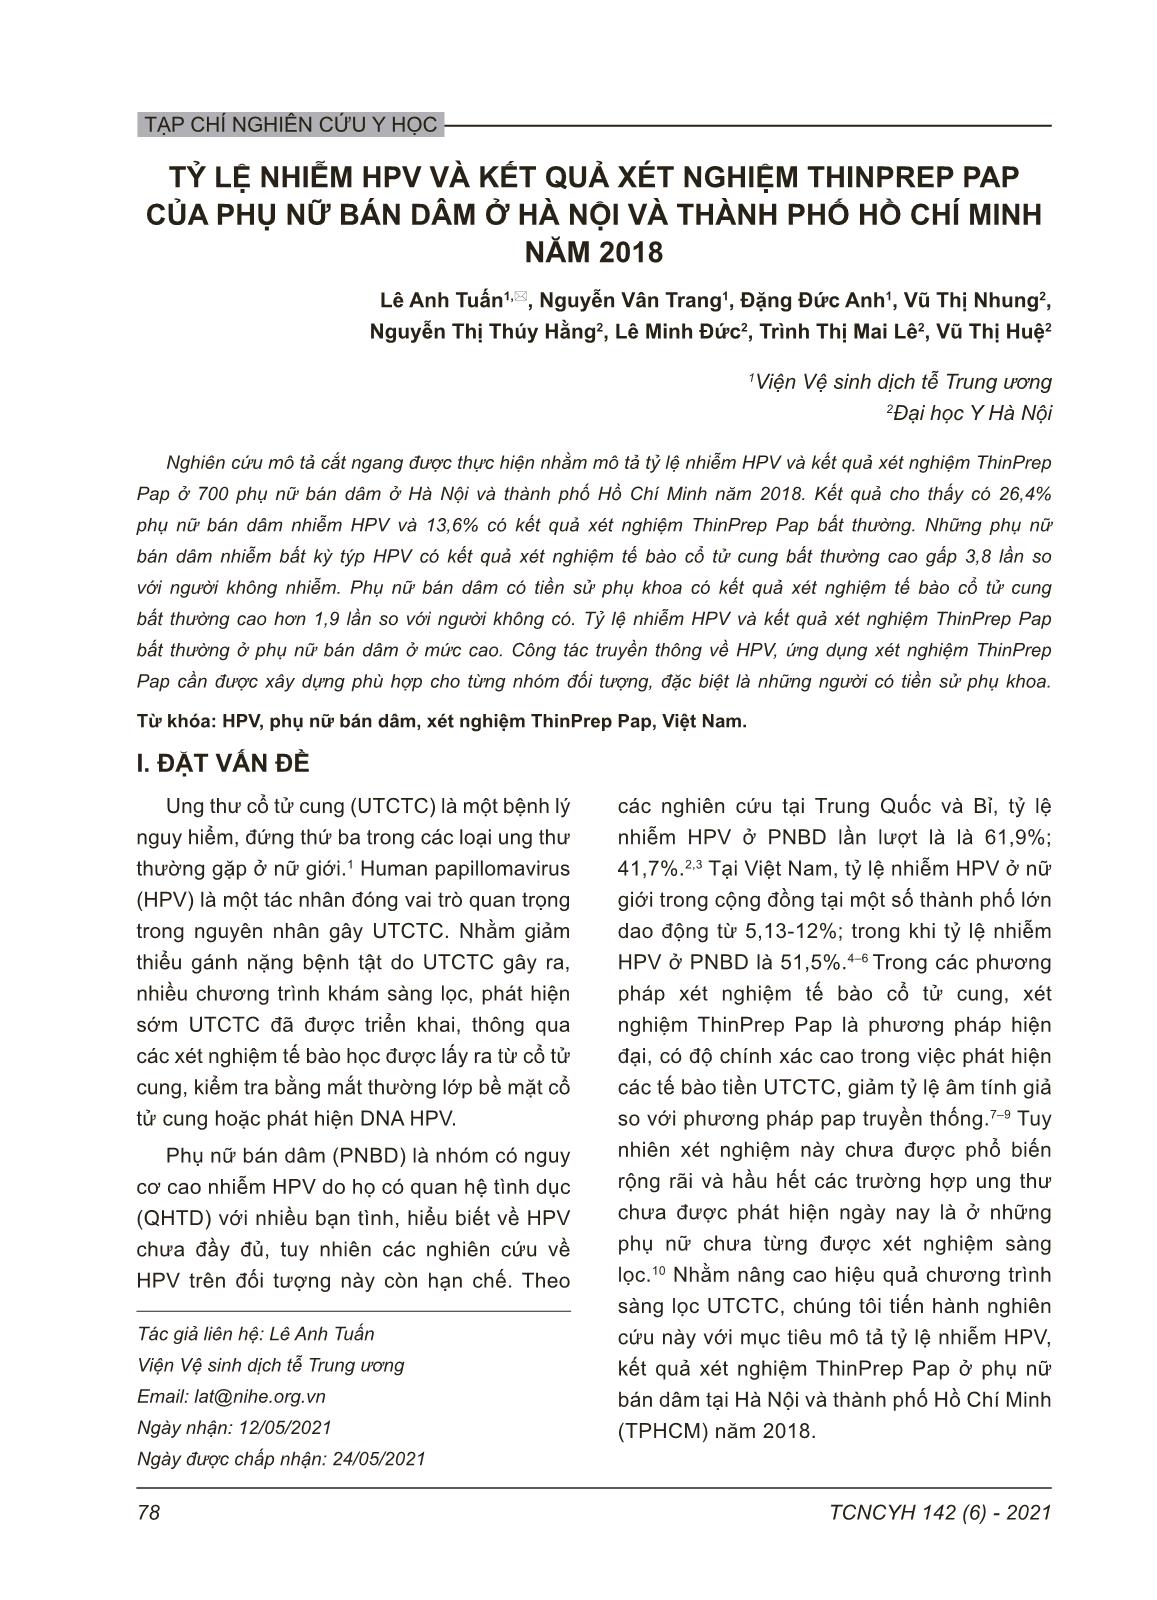 Tỷ lệ nhiễm hpv và kết quả xét nghiệm thinprep pap của phụ nữ bán dâm ở Hà nội và thành phố Hồ Chí Minh năm 2018 trang 1